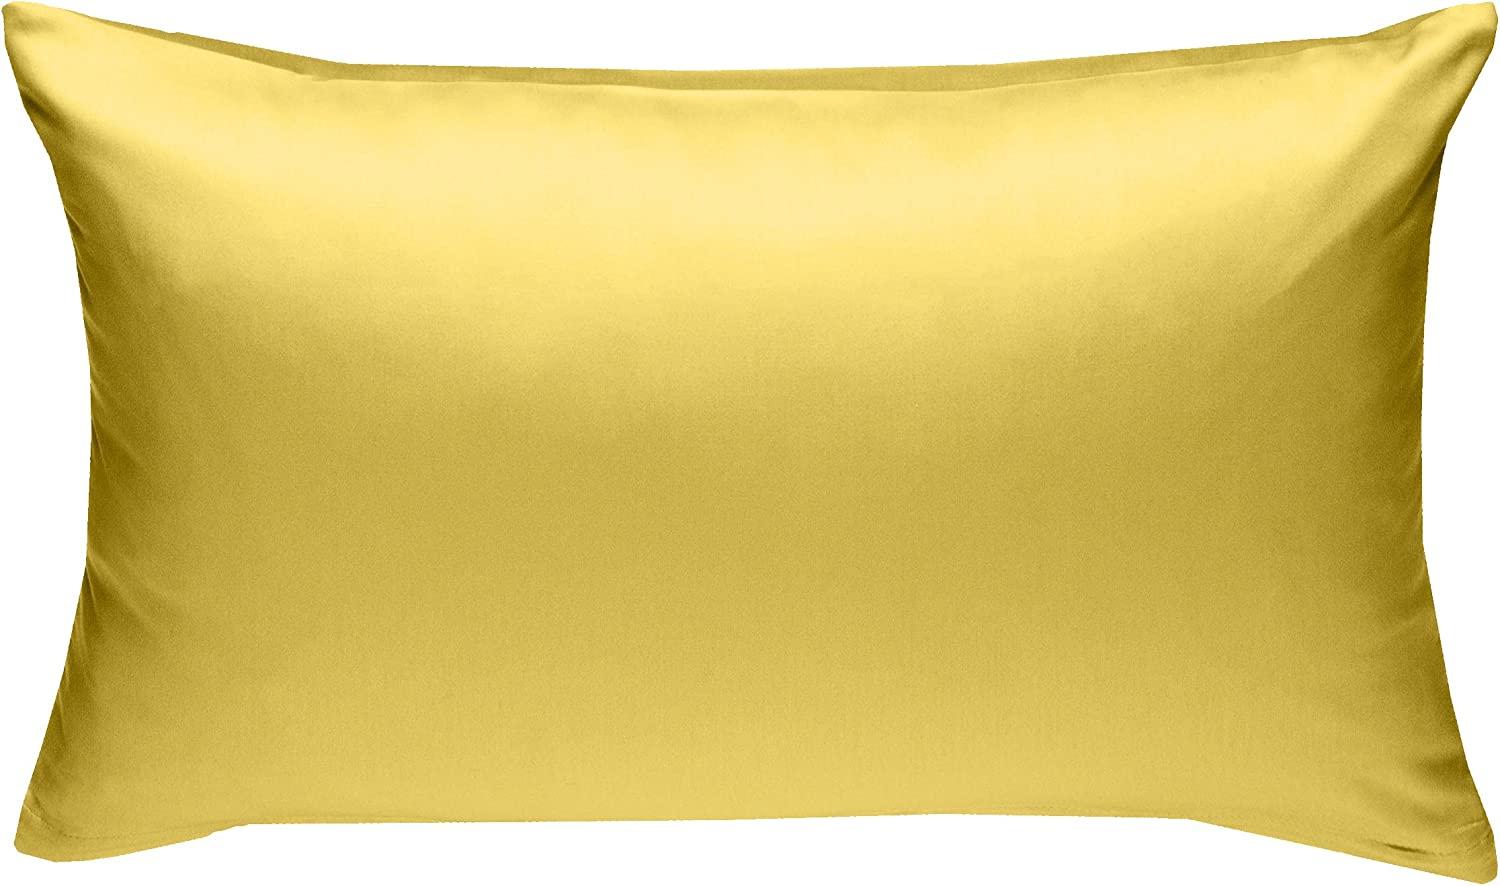 Bettwaesche-mit-Stil Mako-Satin / Baumwollsatin Bettwäsche uni / einfarbig gelb Kissenbezug 40x60 cm Bild 1